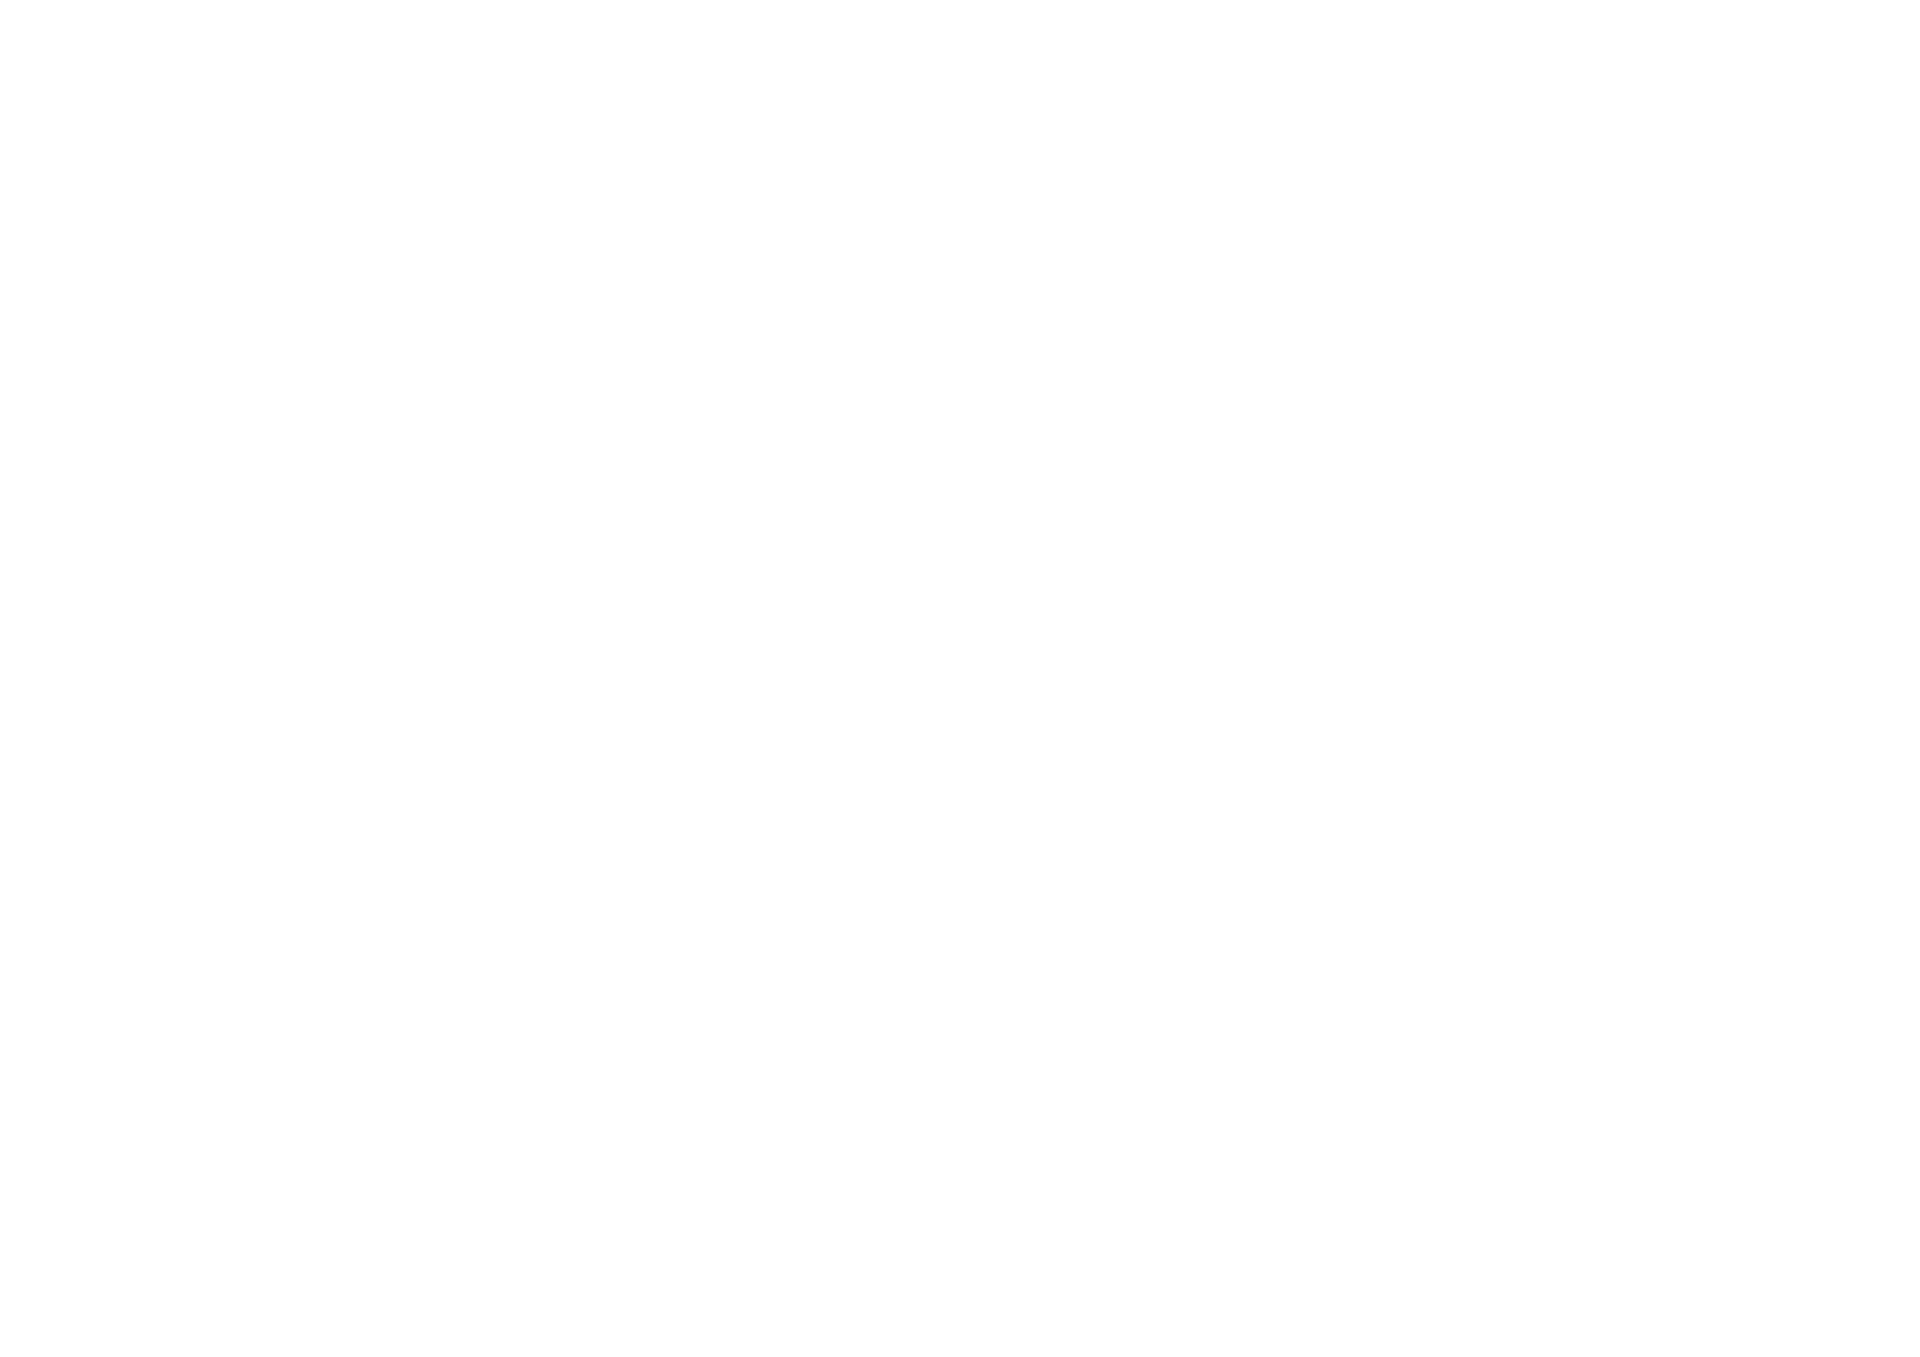 Logo 130 años de aniversario de casa tukma.